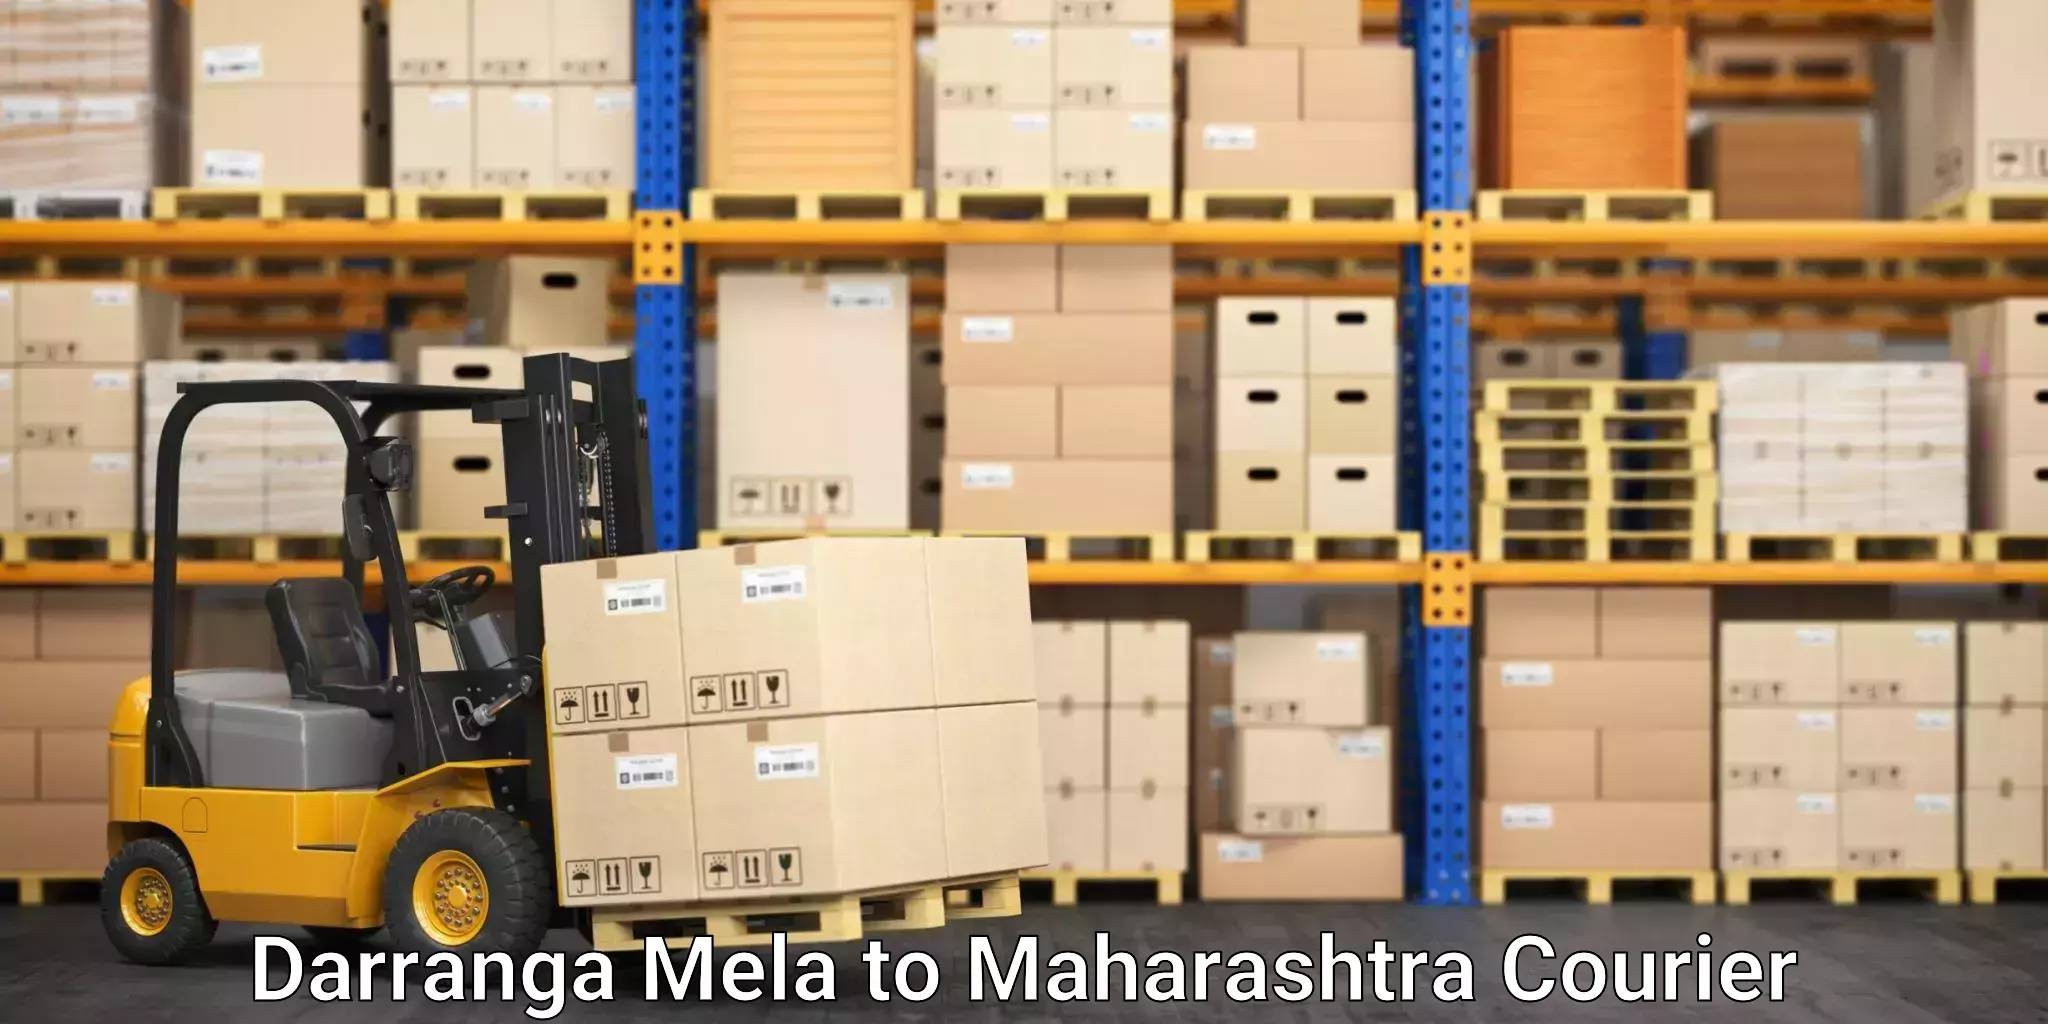 Competitive shipping rates Darranga Mela to Institute of Chemical Technology Mumbai